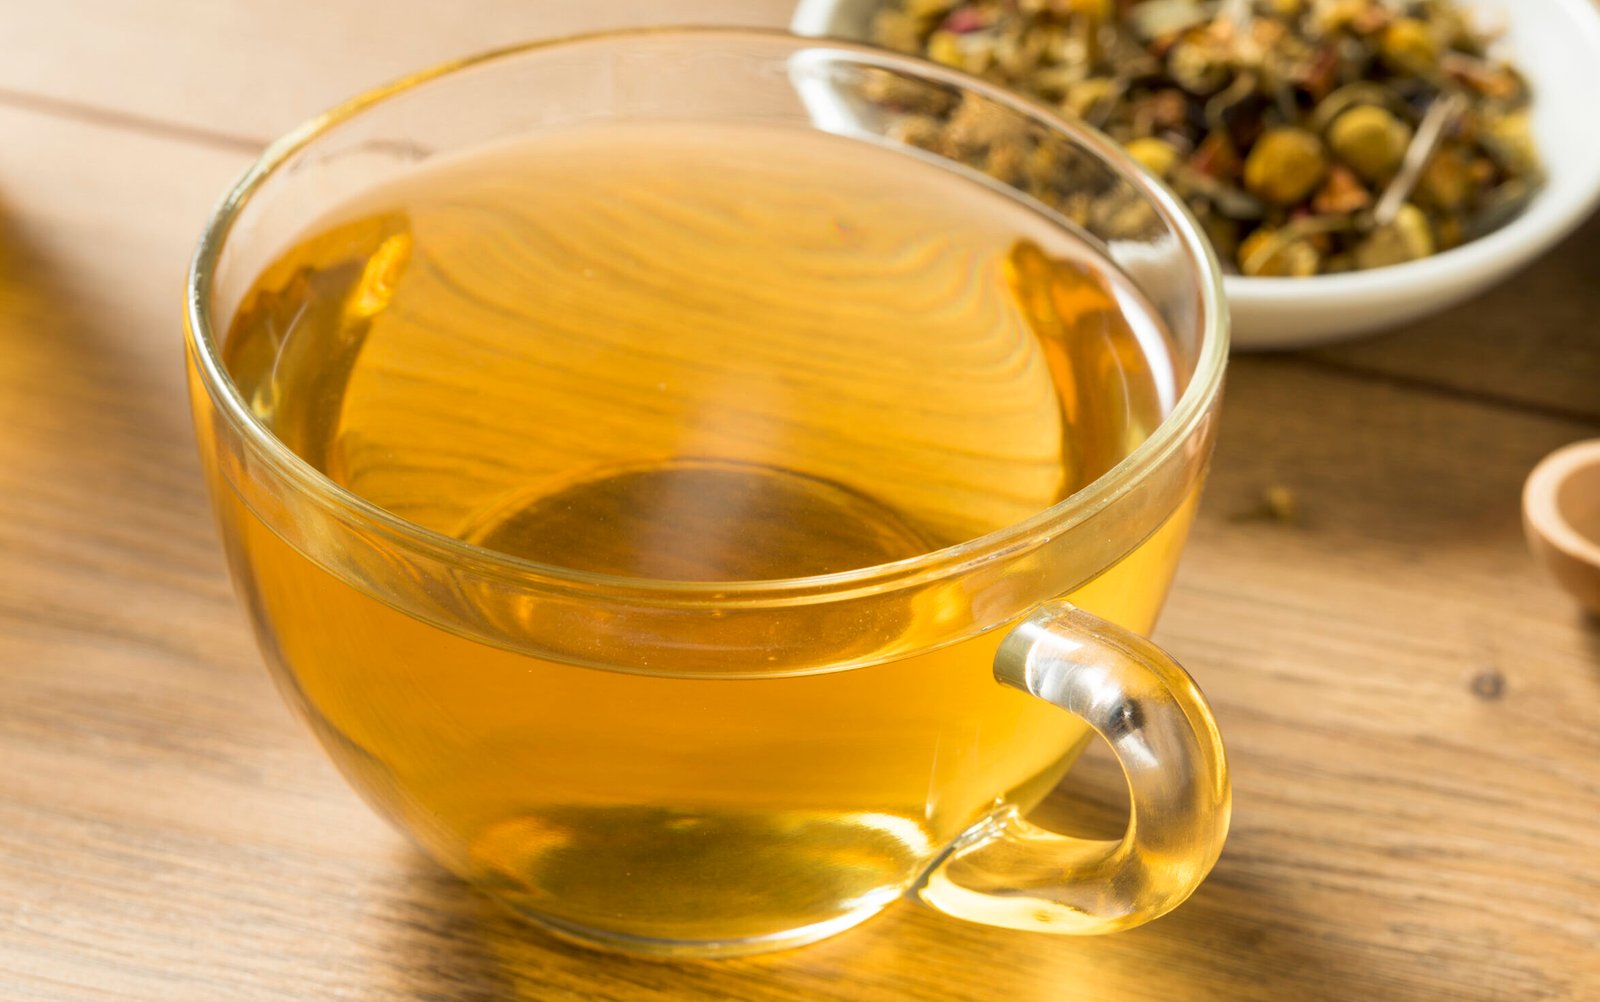 Chá de camomila ajuda a reduzir o açúcar no sangue, segundo estudo